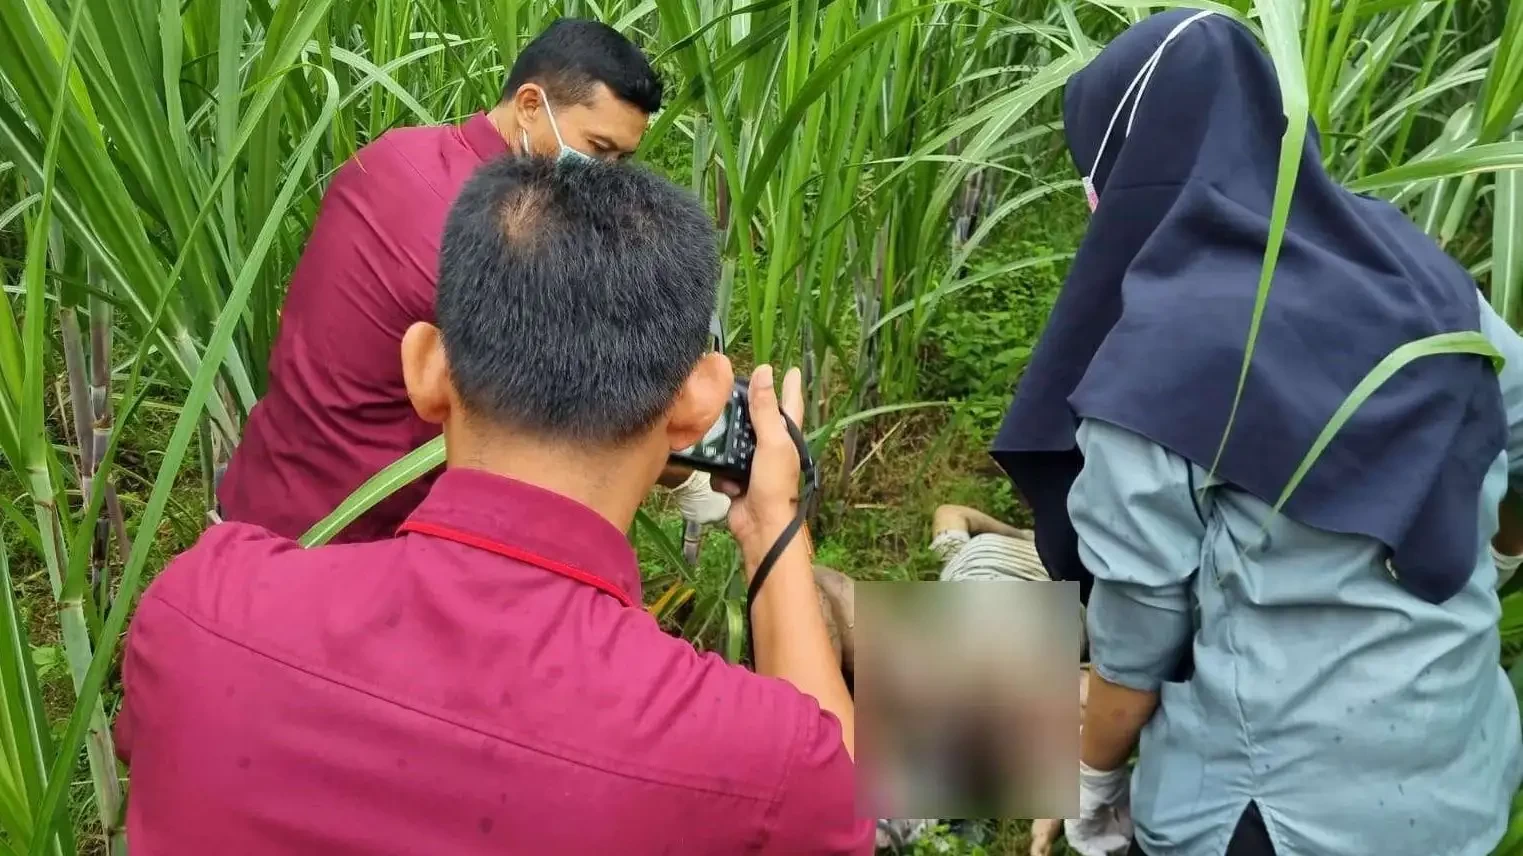 Mayat perempuan dan orok bayinya ditemukan di kebun tebu desa Siman, Kecamatan Kepung, Kediri. (Foto: Istimewa)